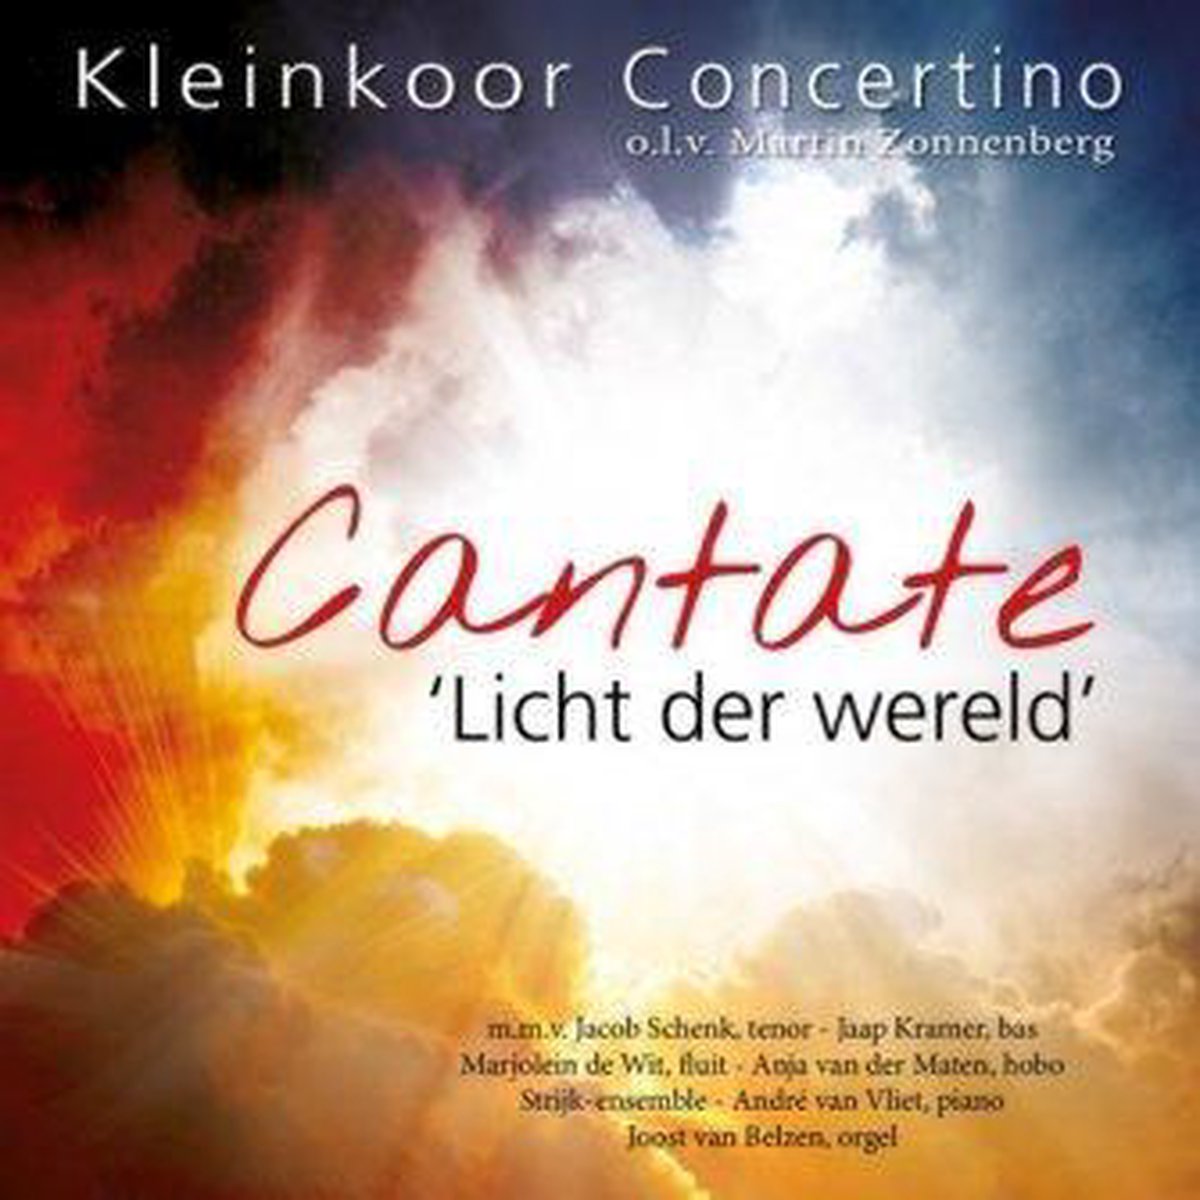 Afbeelding van product Cantate - Licht der wereld / Kleinkoor Concertino o.l.v. Martin Zonnenberg  - Onbekend